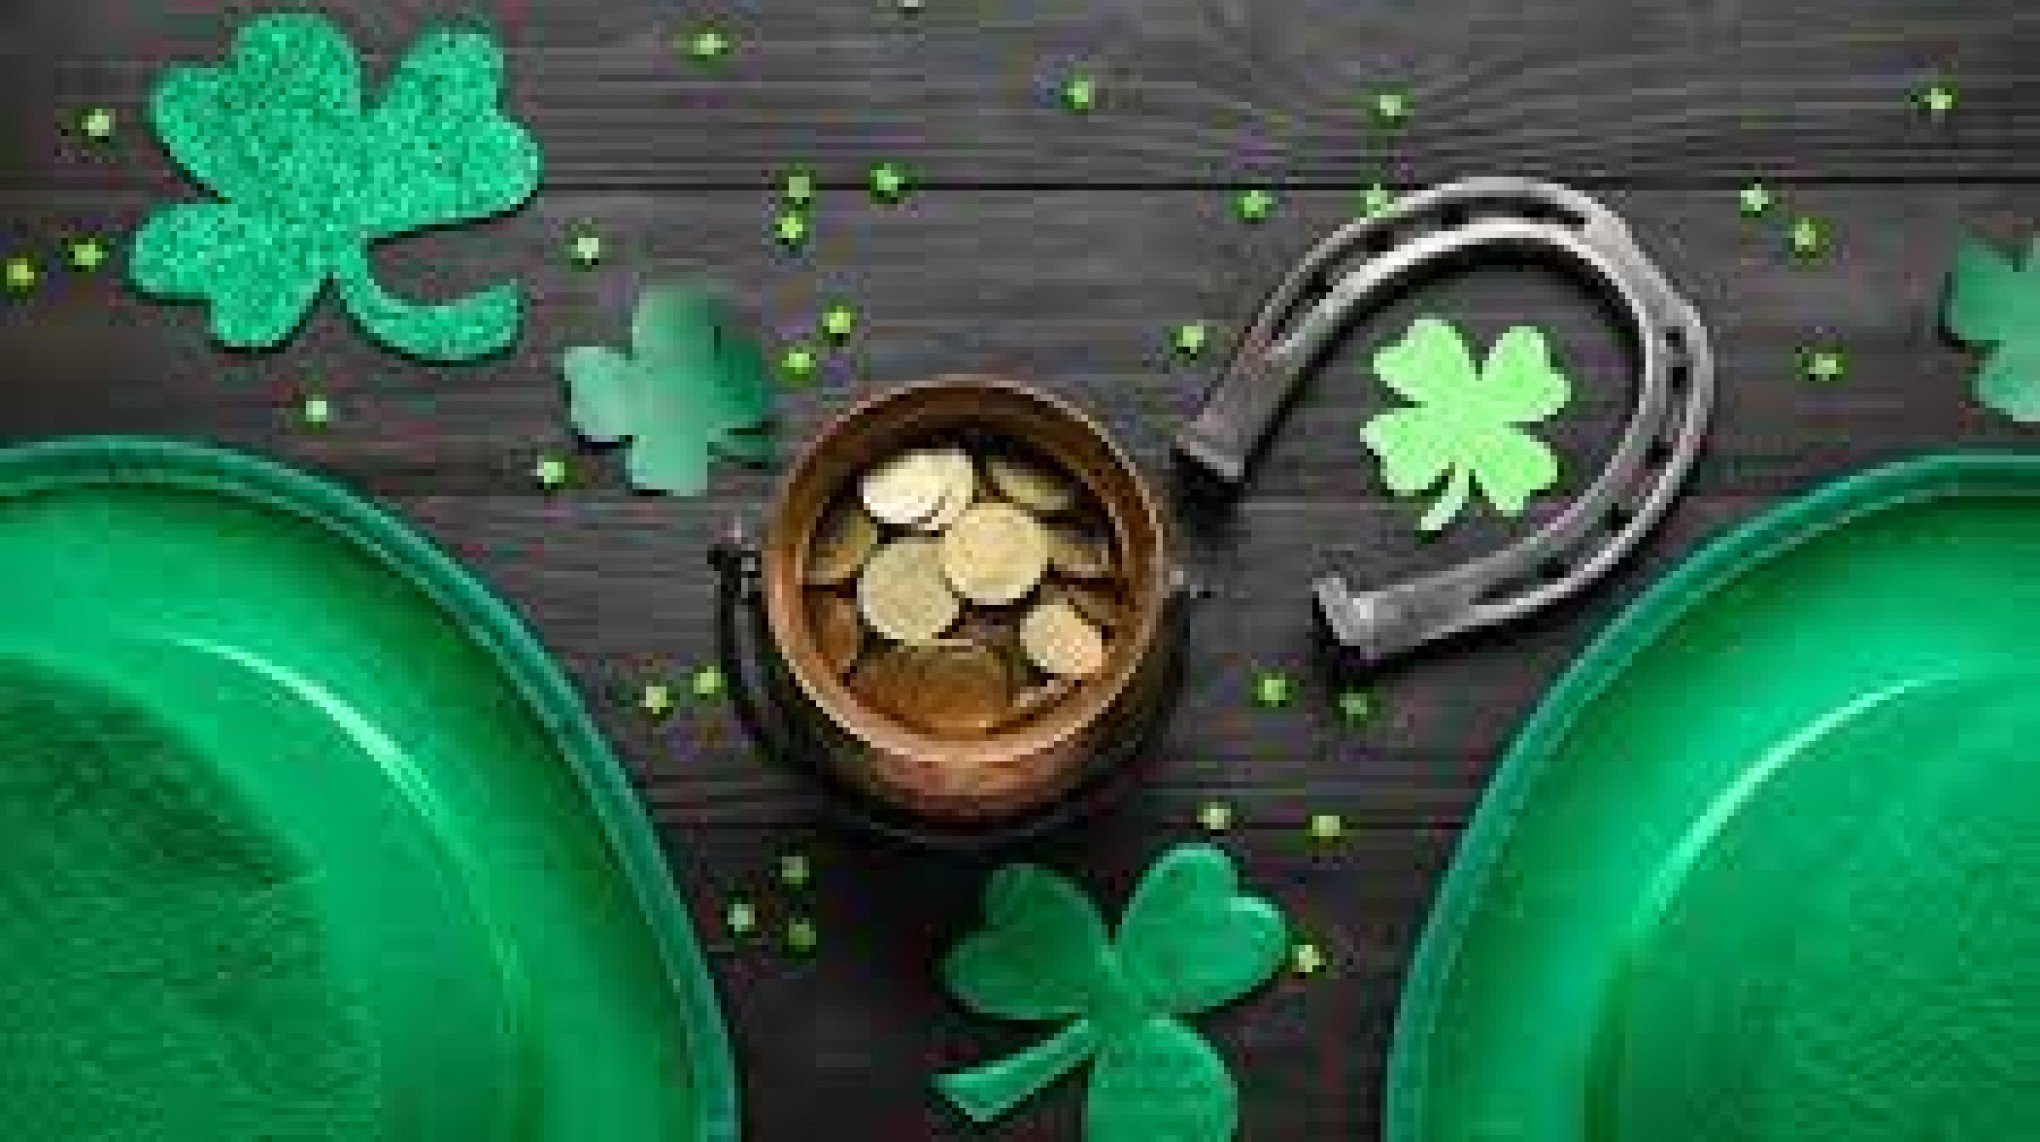 Três curiosidades sobre o St. Patrick’s Day, festa irlandesa que caiu no gosto dos gaúchos